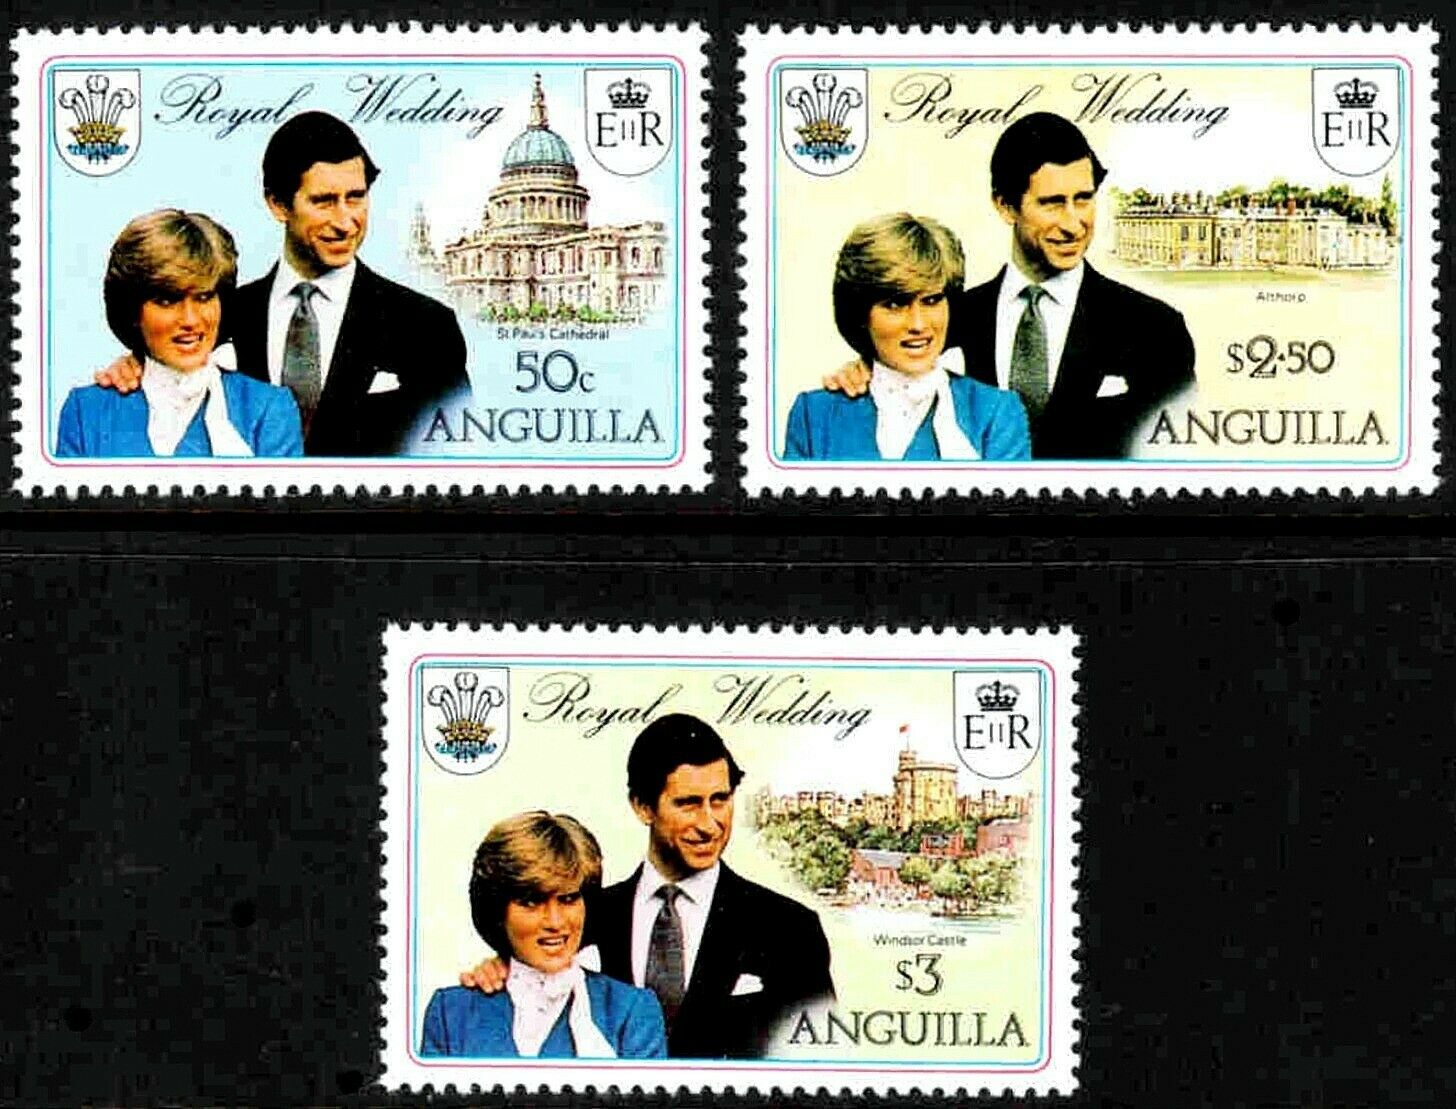 Anguilla - 1981 - Royal Wedding - Diana & Charles - Cathedral ++ Mint - Mnh Set!